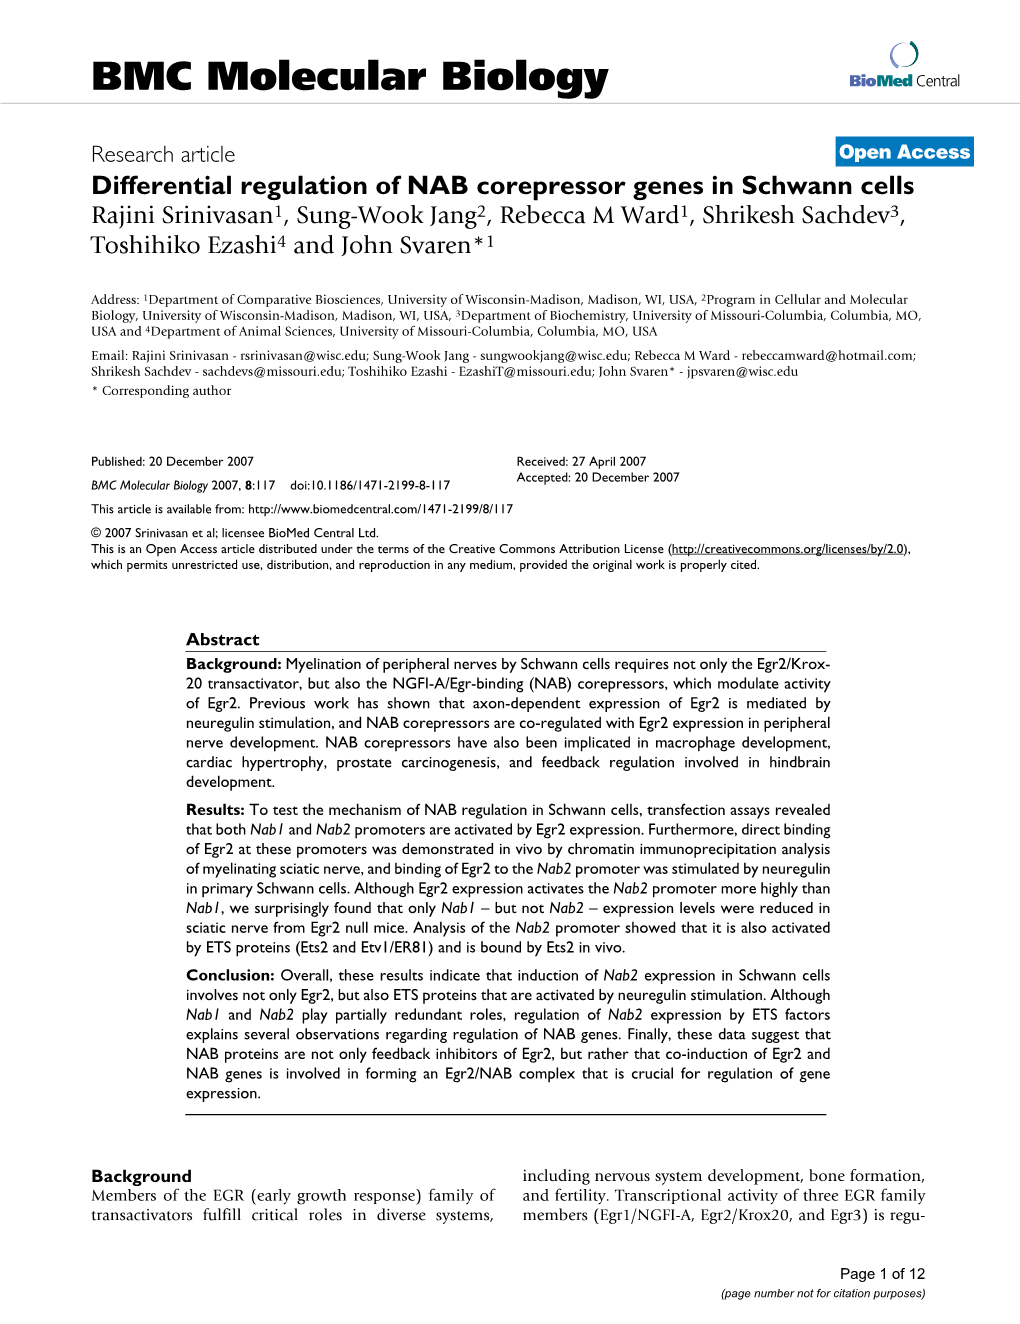 Differential Regulation of NAB Corepressor Genes in Schwann Cells